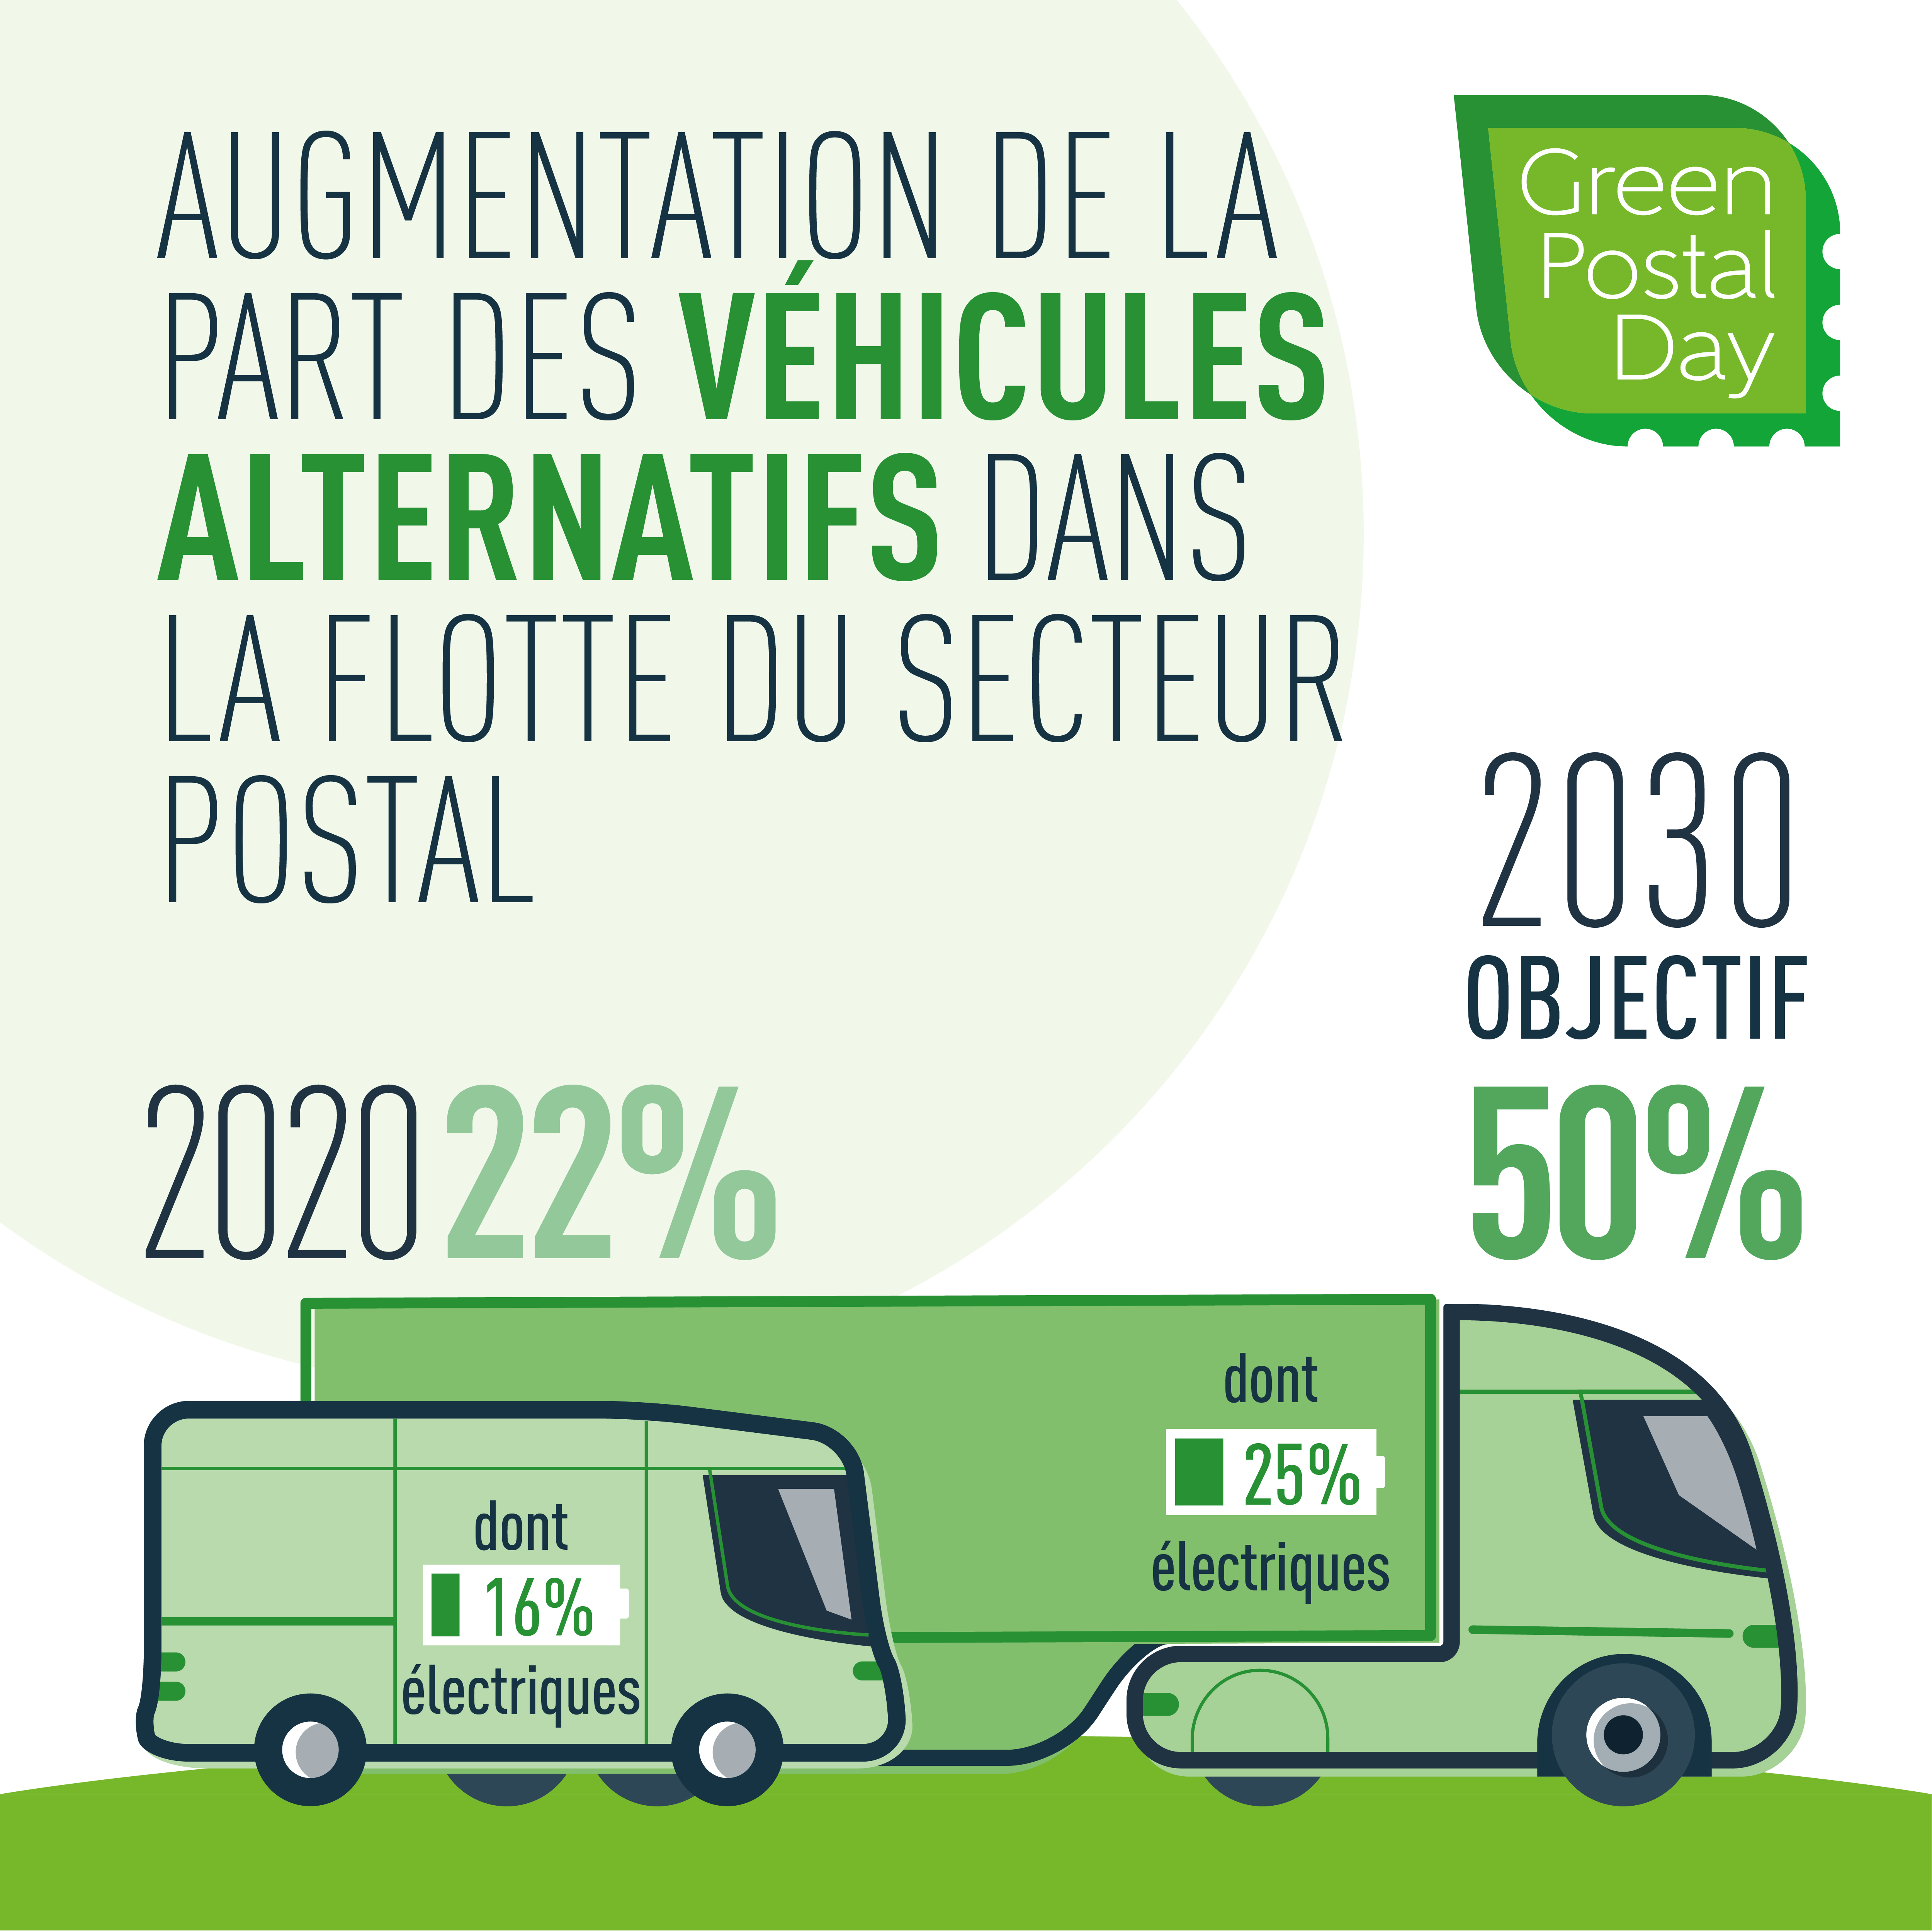 50% de véhicules alternatifs dans les flottes postales